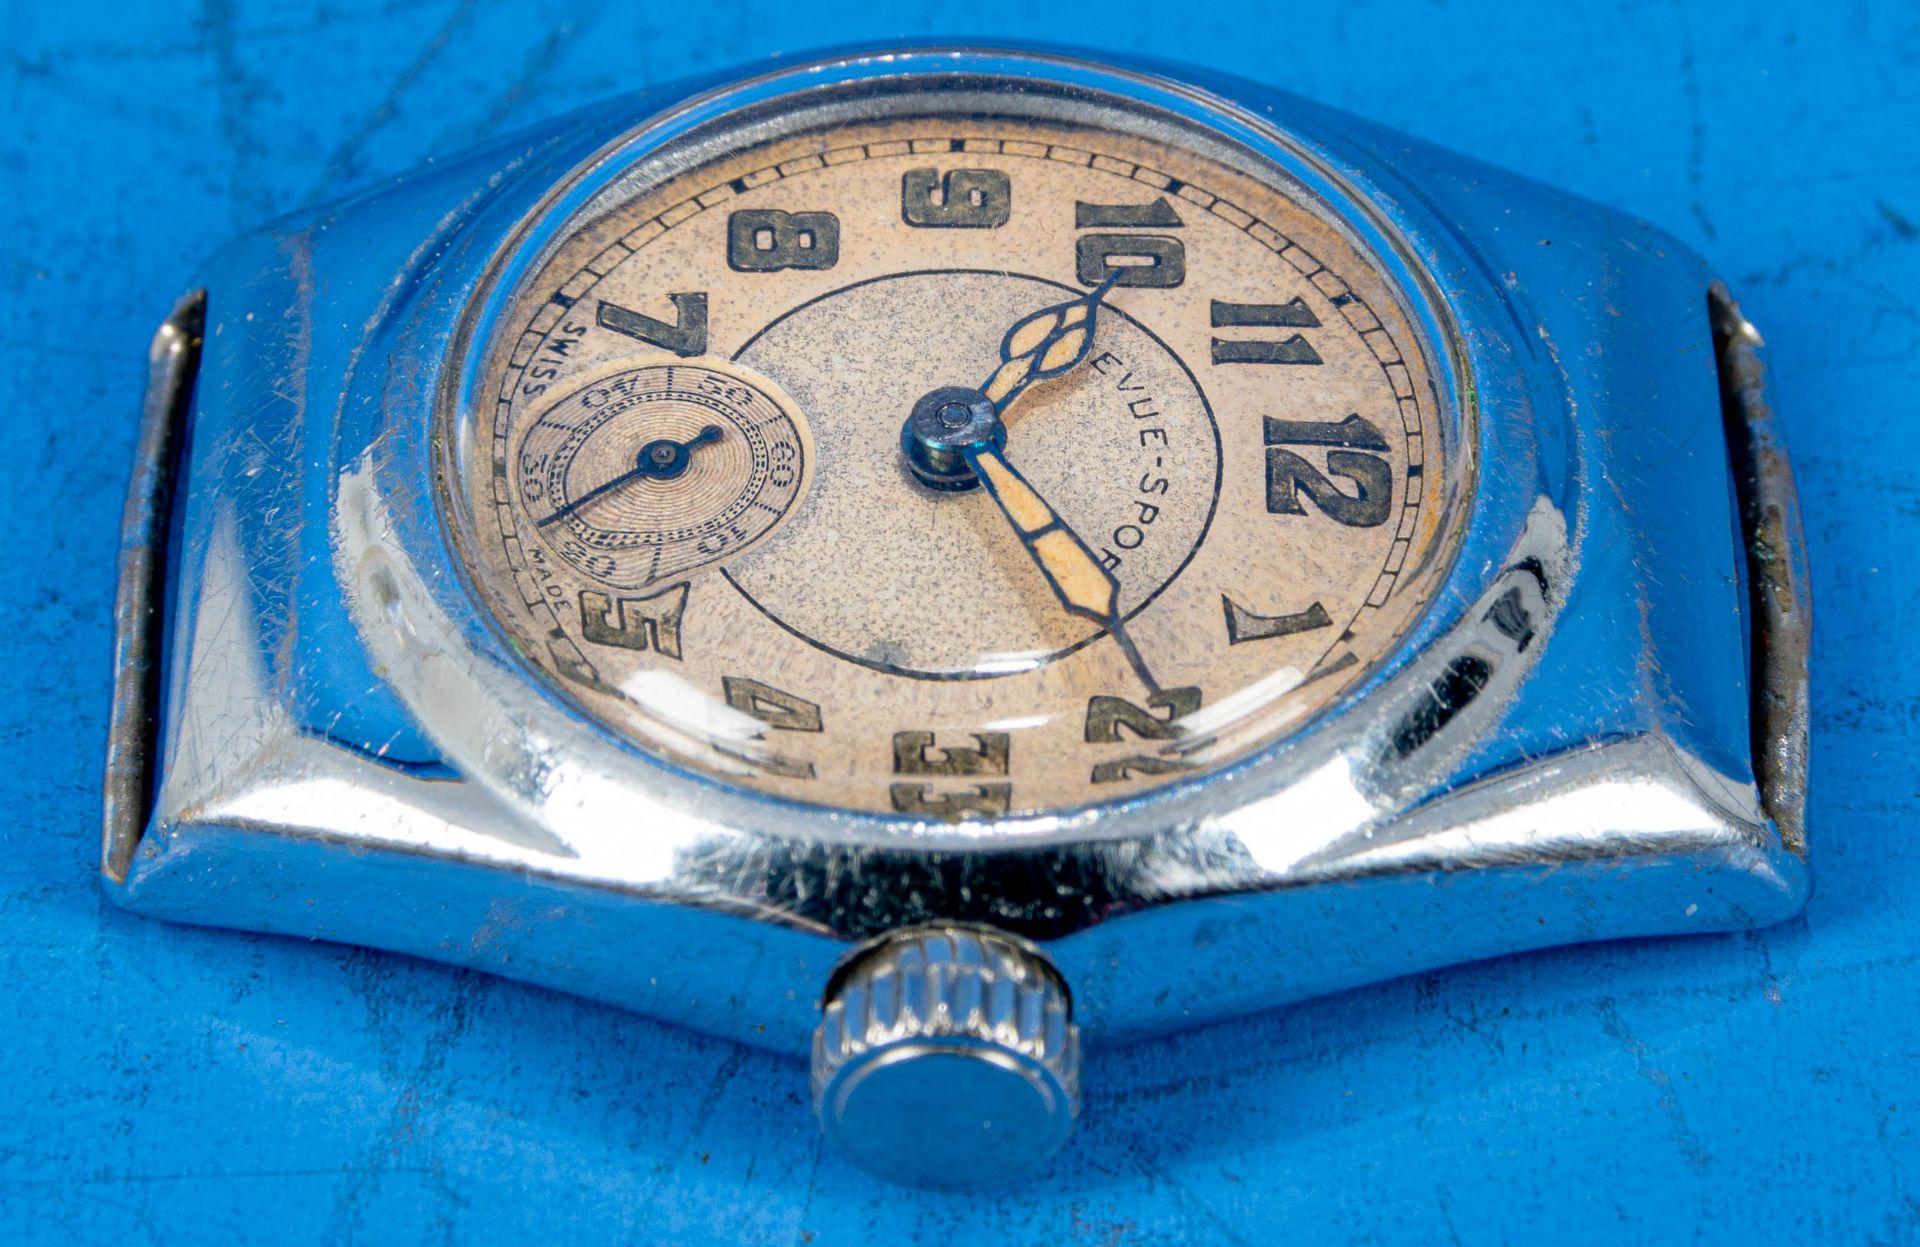 "REVUE SPORT" Unisex Armbanduhr, Stahlgehäuse, wohl 1930er Jahre, Gehäusedurchmesser ca. 28 mm, ara - Bild 3 aus 5